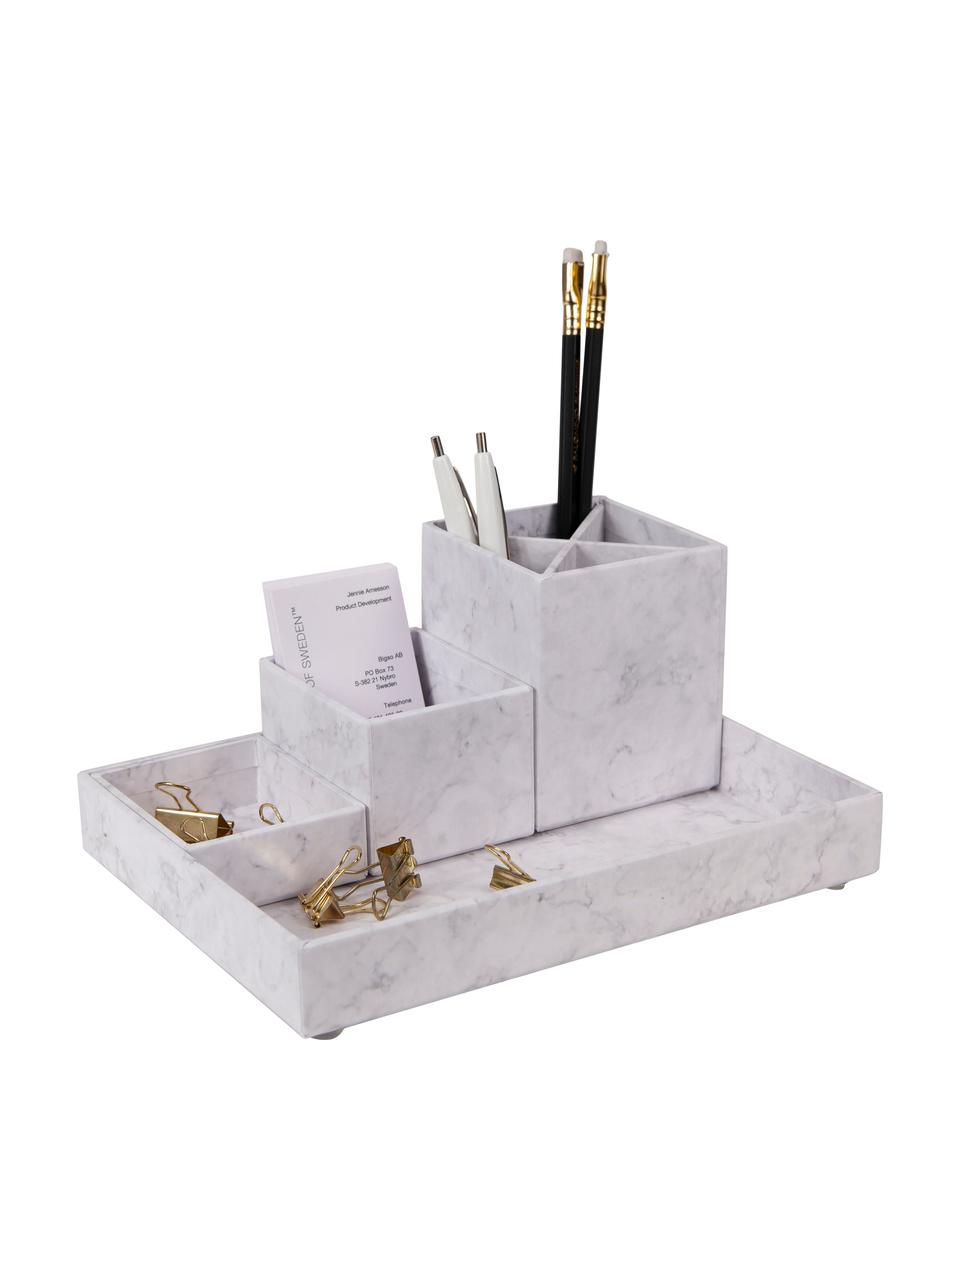 Büro-Organizer-Set Lena, 4-tlg., Fester, laminierter Karton, Weiß, marmoriert, Set mit verschiedenen Größen